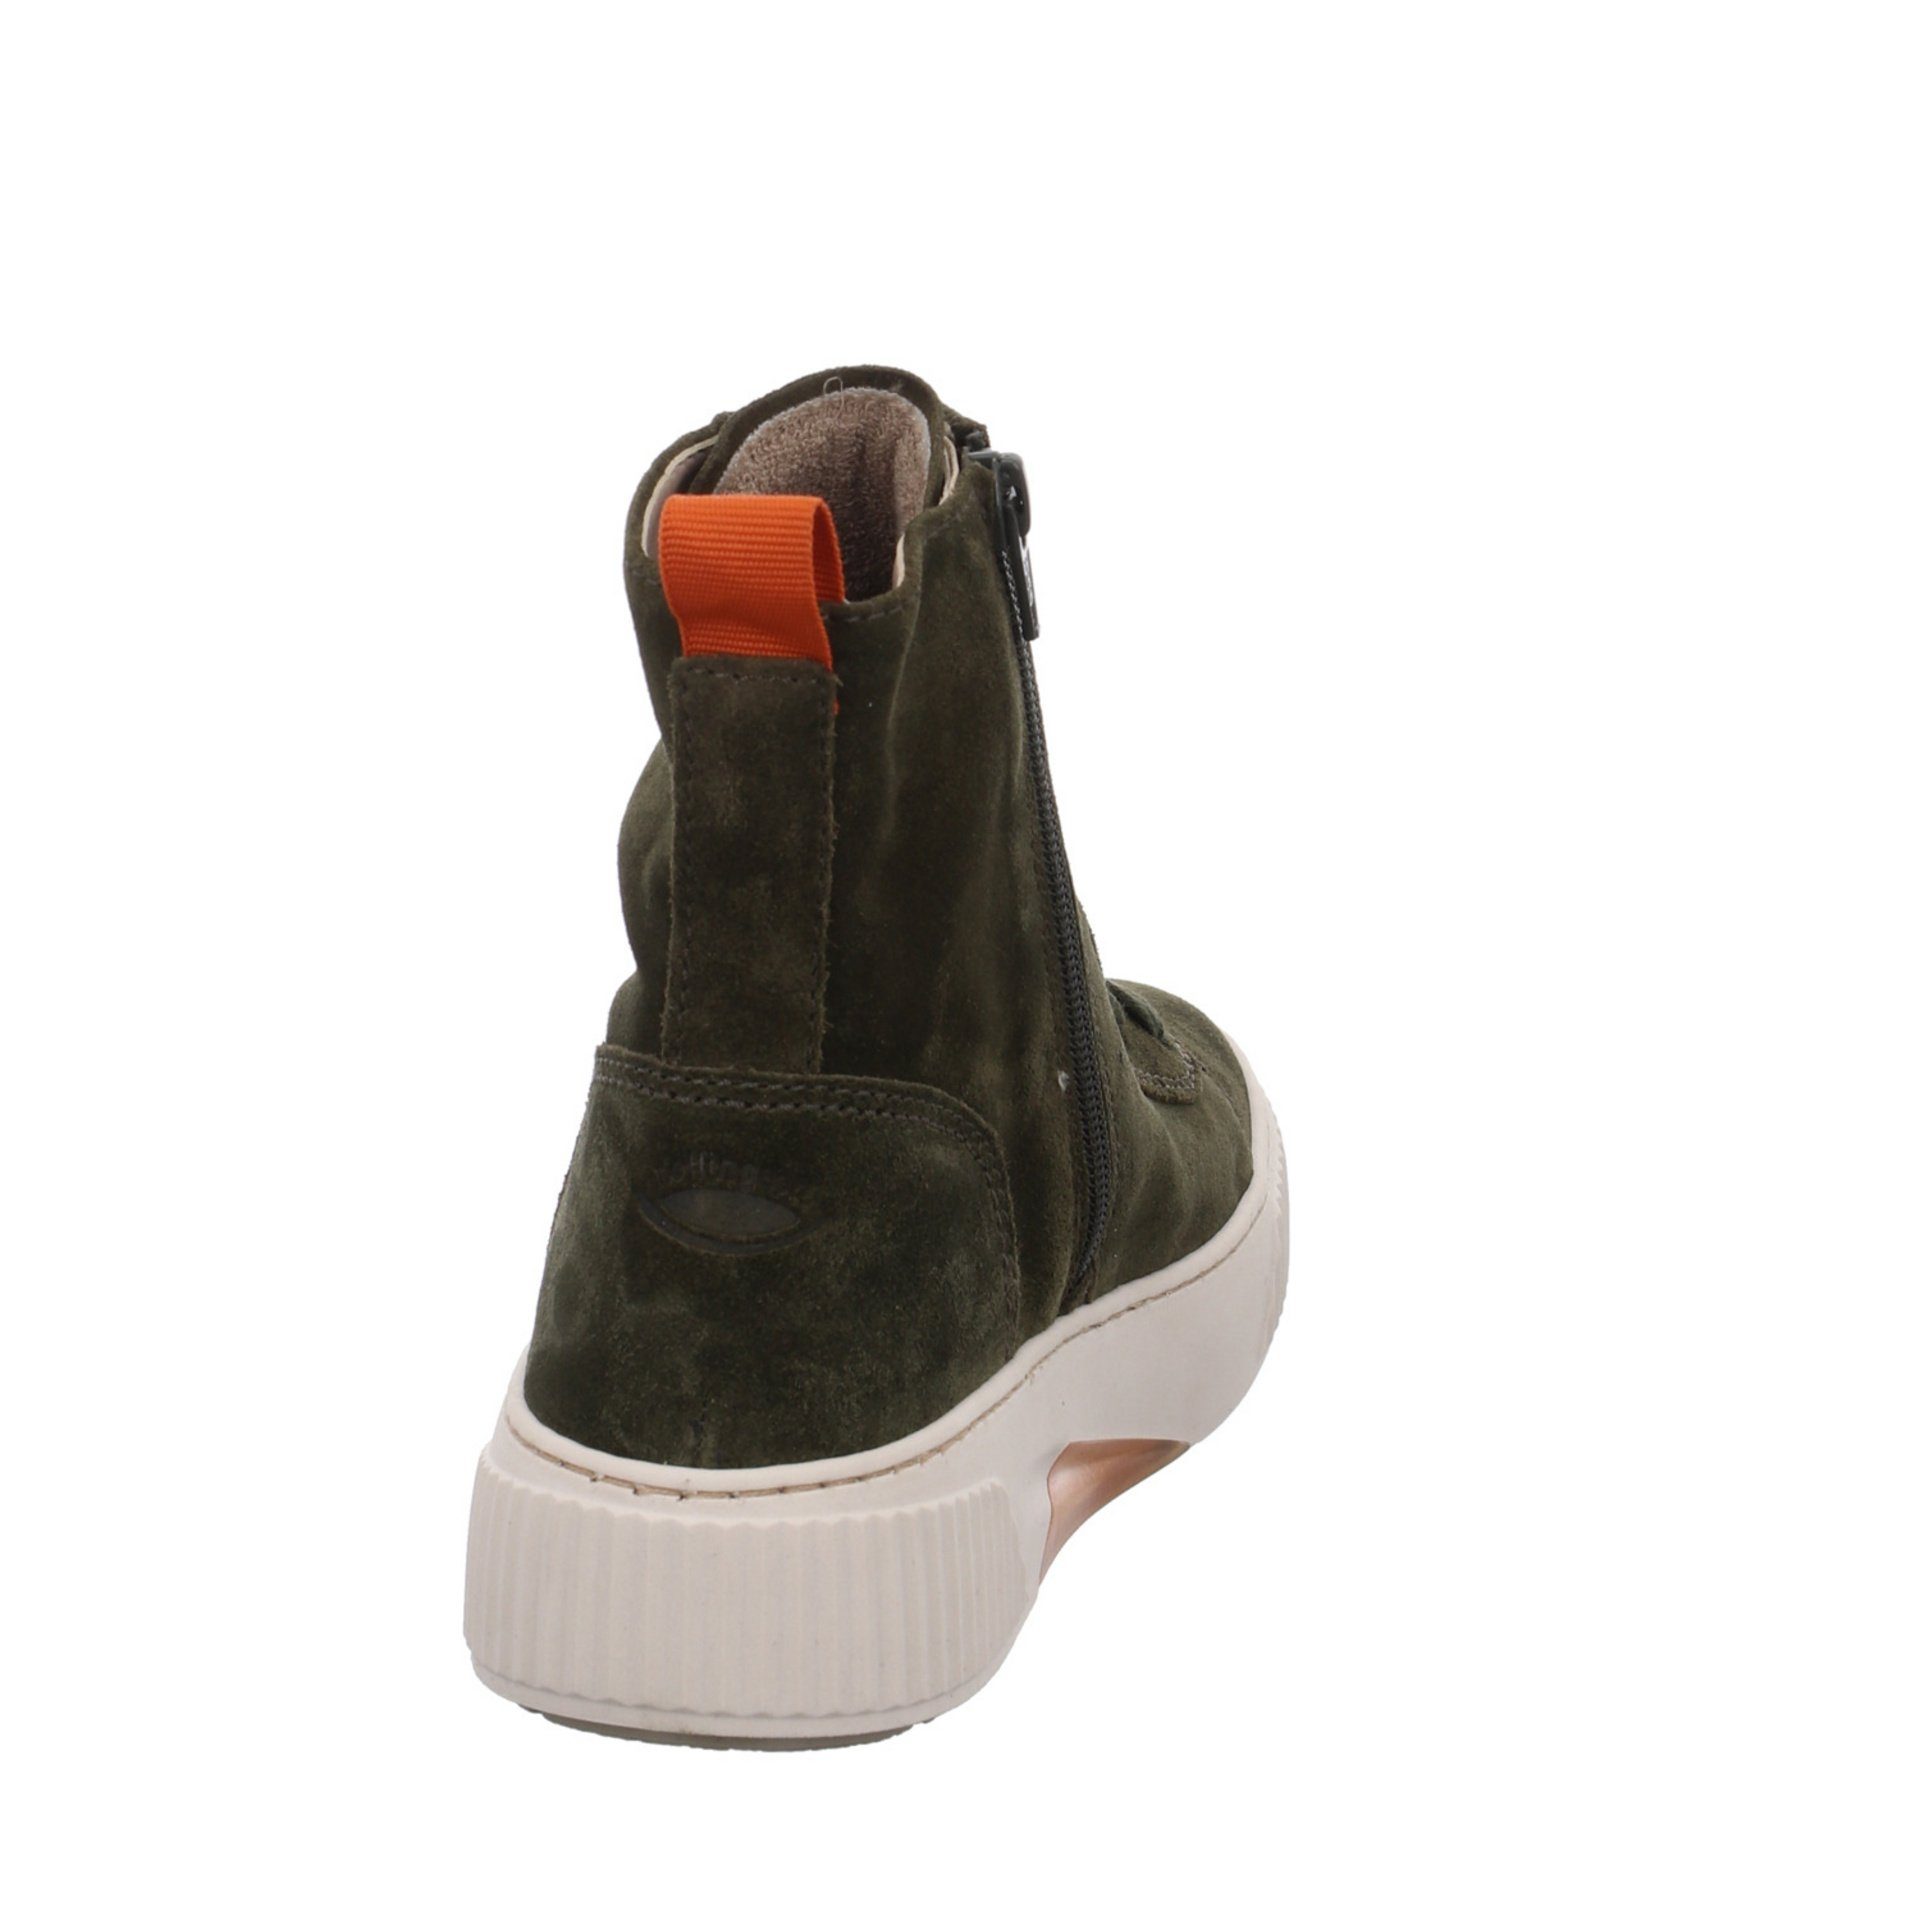 Gabor Boots grün Stiefel Veloursleder Schuhe Damen Elegant Klassisch Stiefel